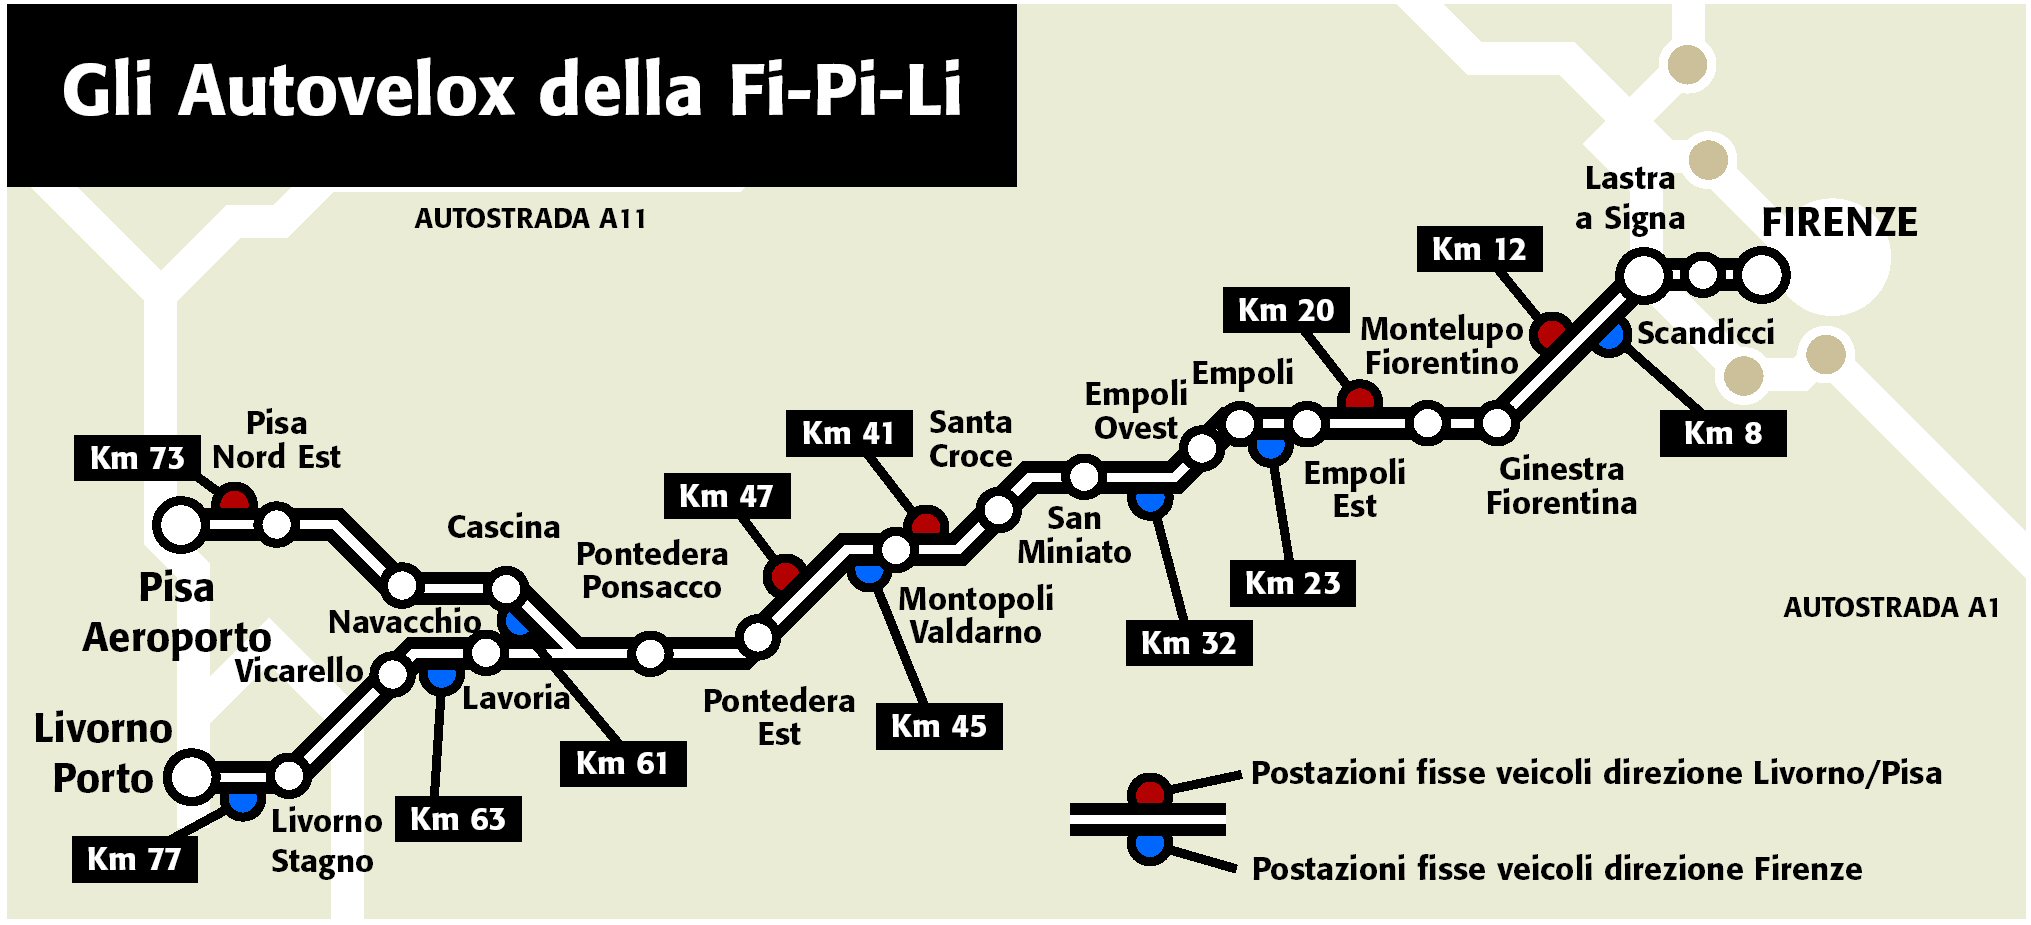 La mappa degli autovelox in FiPiLi